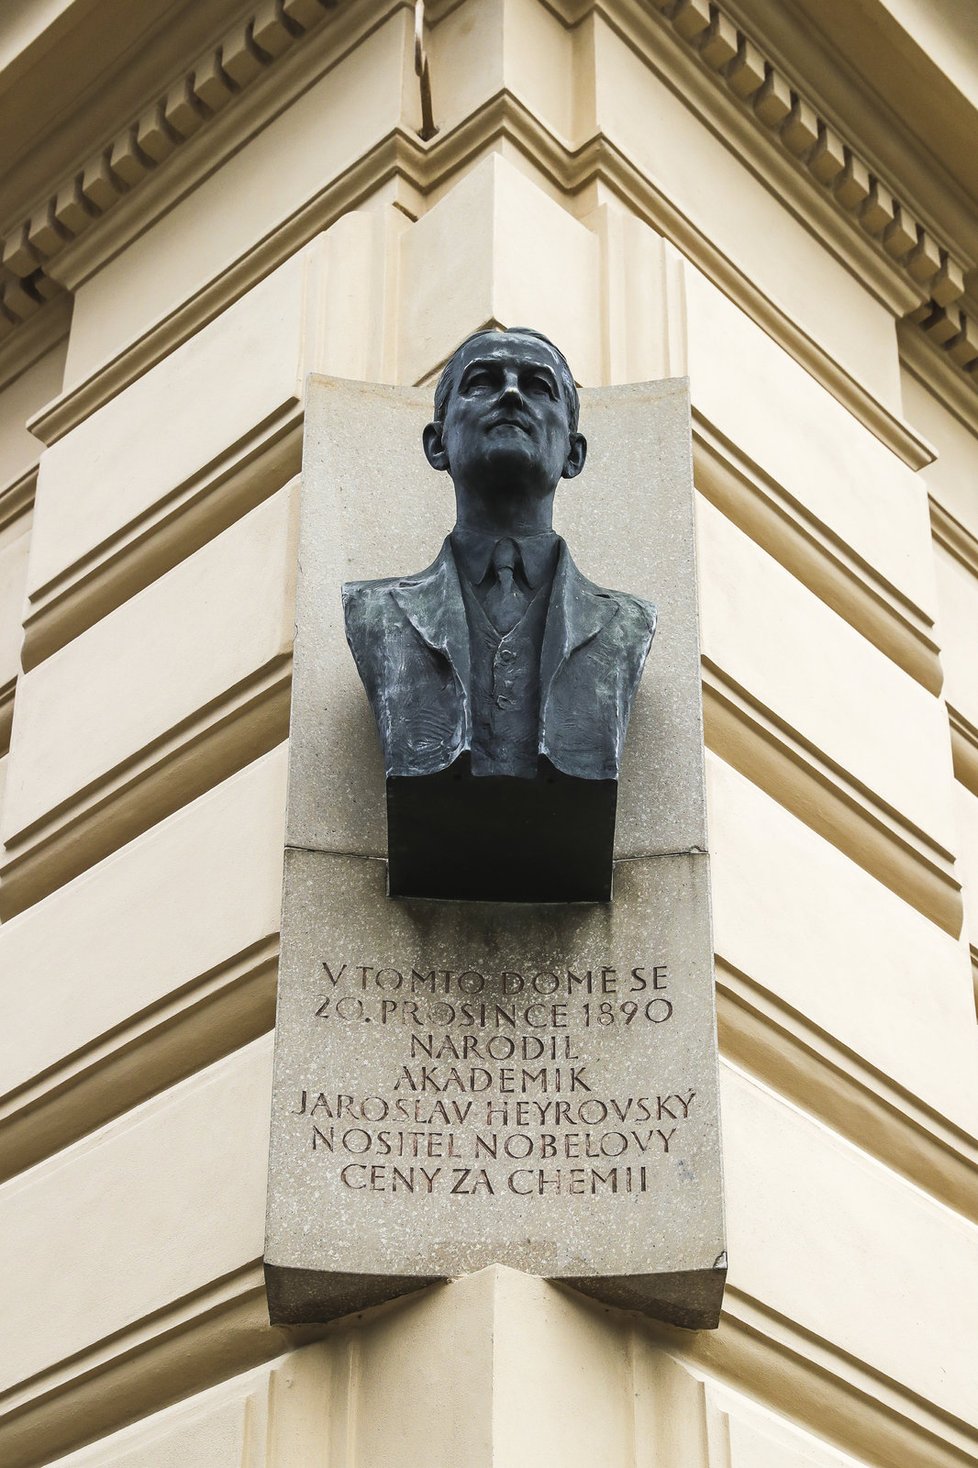 Památník Jaroslava Heyrovského, nositele Nobelovy ceny, který se v budově narodil.